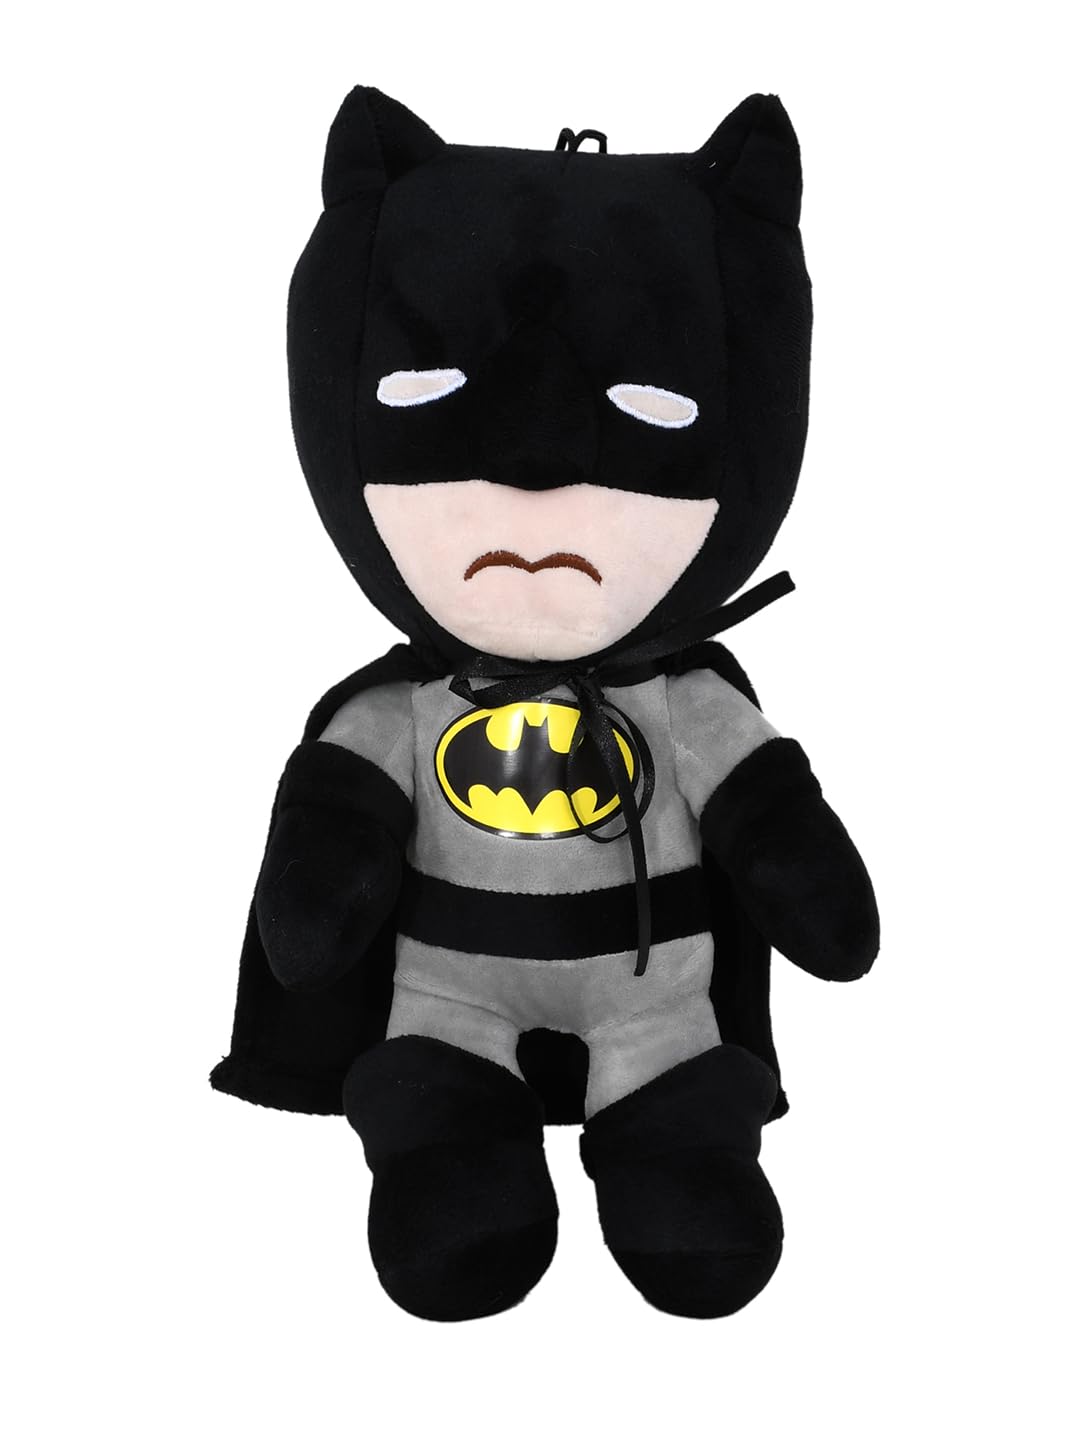 35cm Batman Soft Toy - Grey